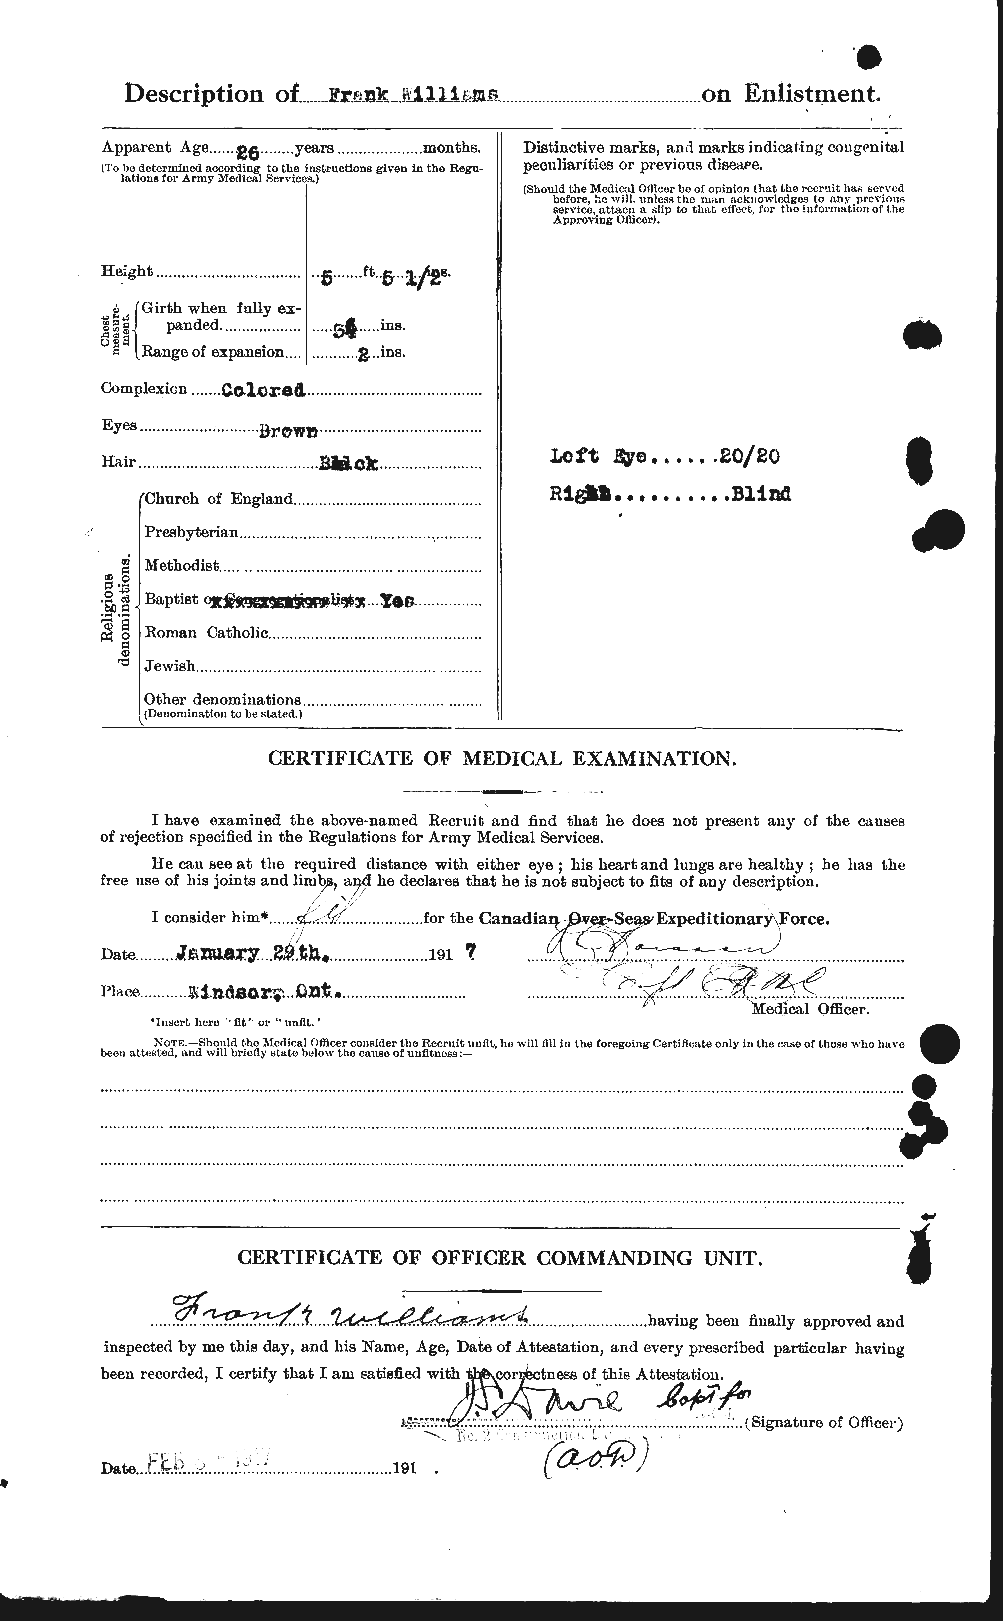 Dossiers du Personnel de la Première Guerre mondiale - CEC 675865b